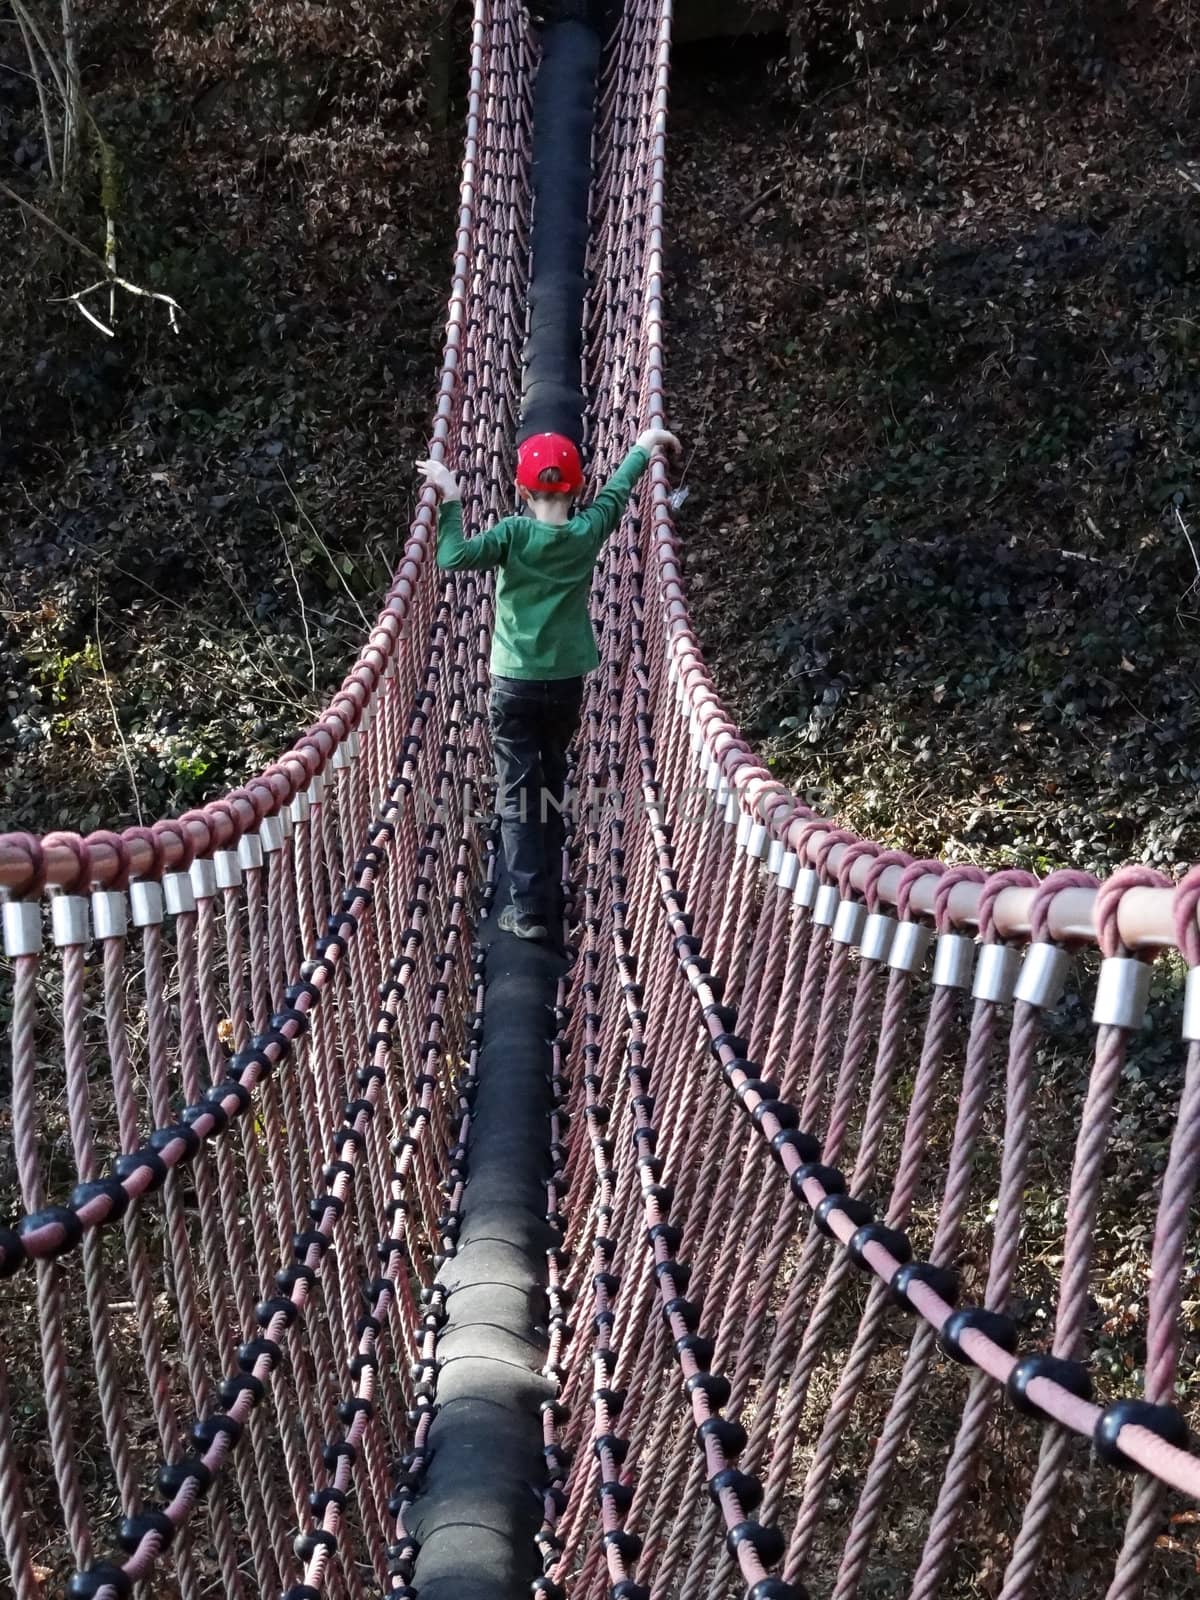 Boy on swing bridge by Mbatelier